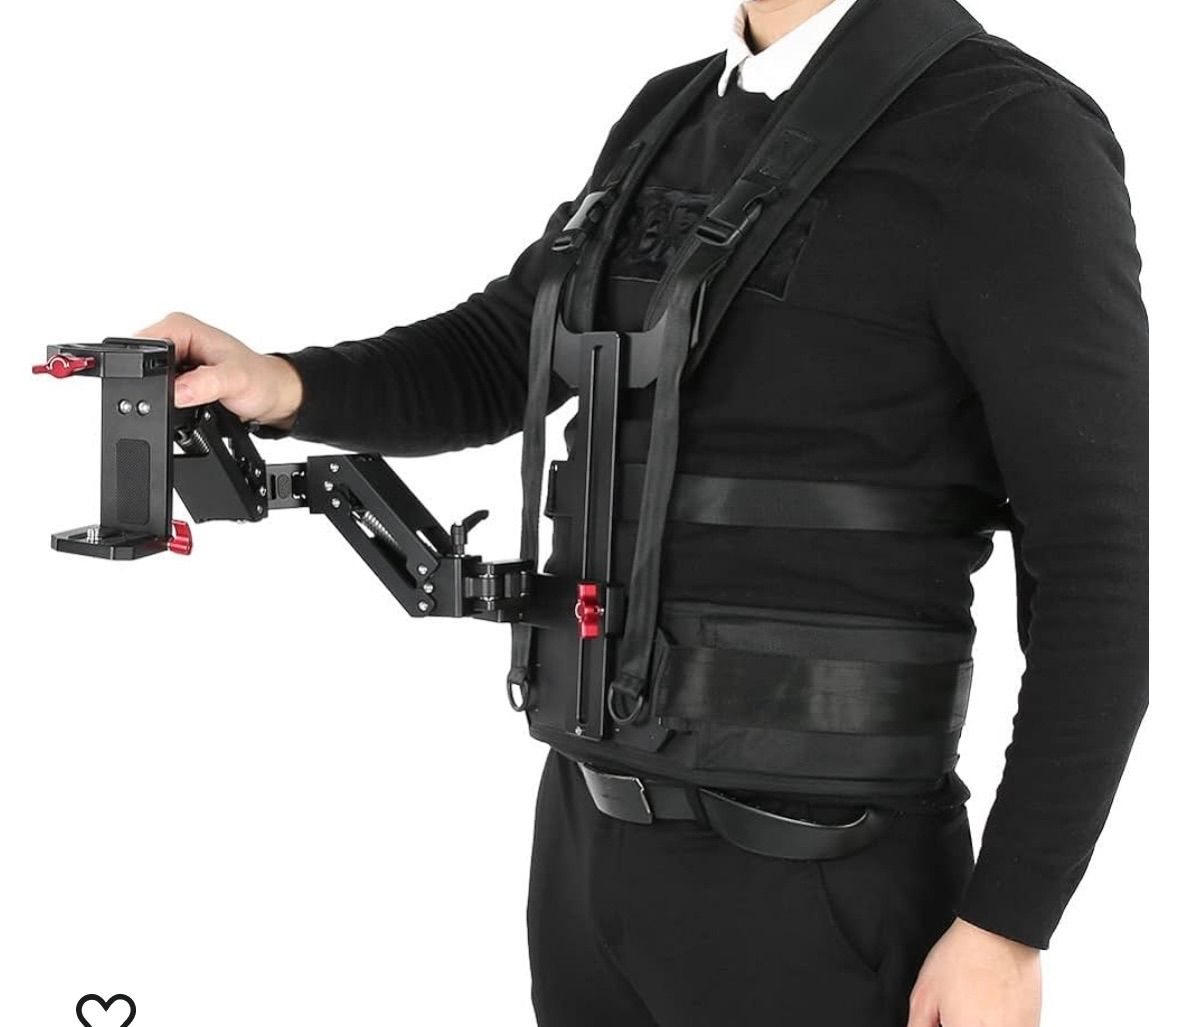 【新品】YELANGU B300 Vest Arm for 3-Axis Gimbal ジンバル カメラスタビライザー